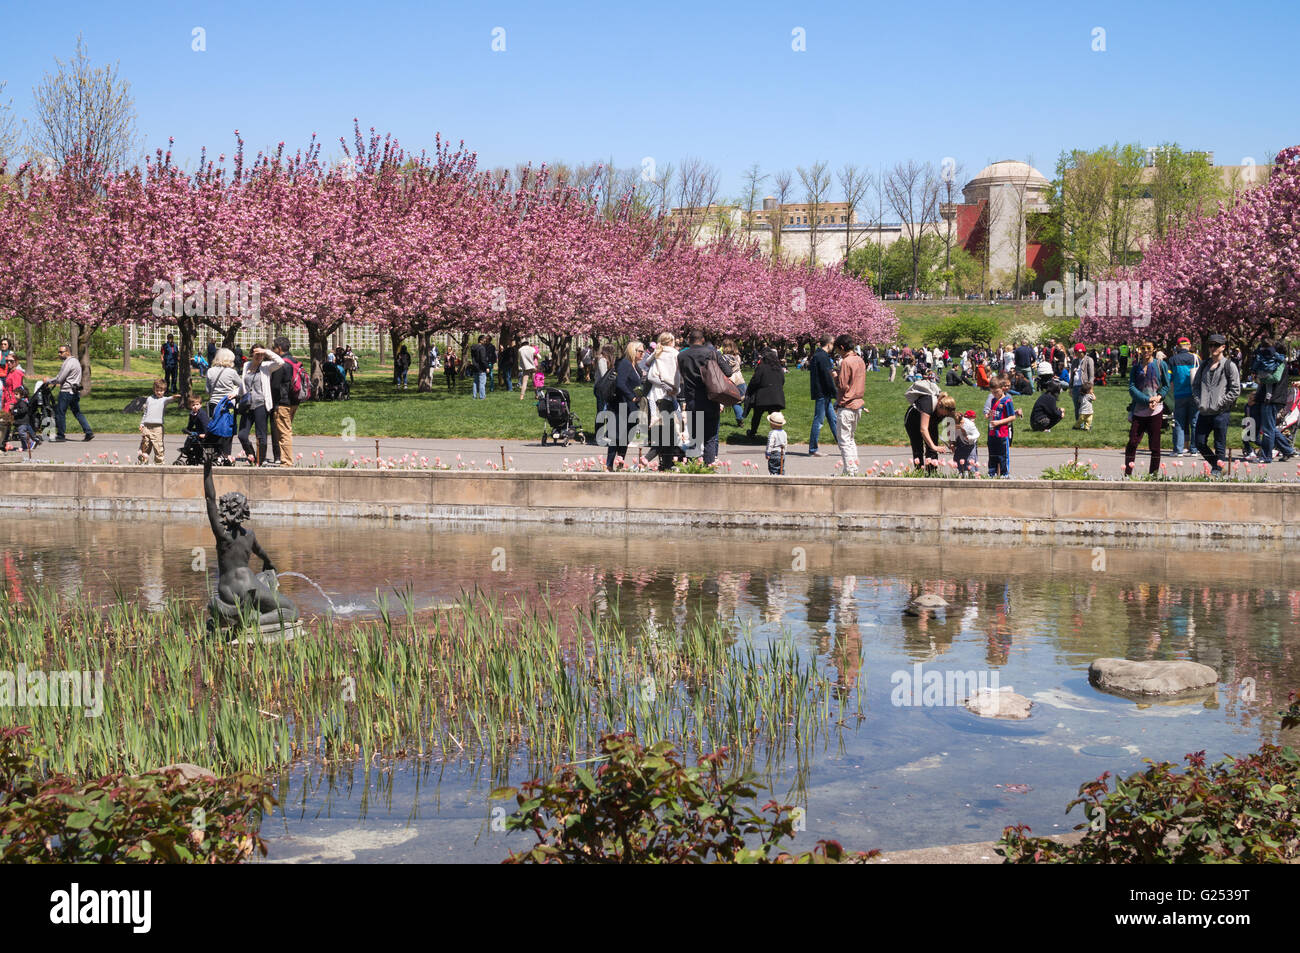 Les visiteurs appréciant la fleur de printemps au Jardin botanique de Brooklyn, New York, USA Banque D'Images